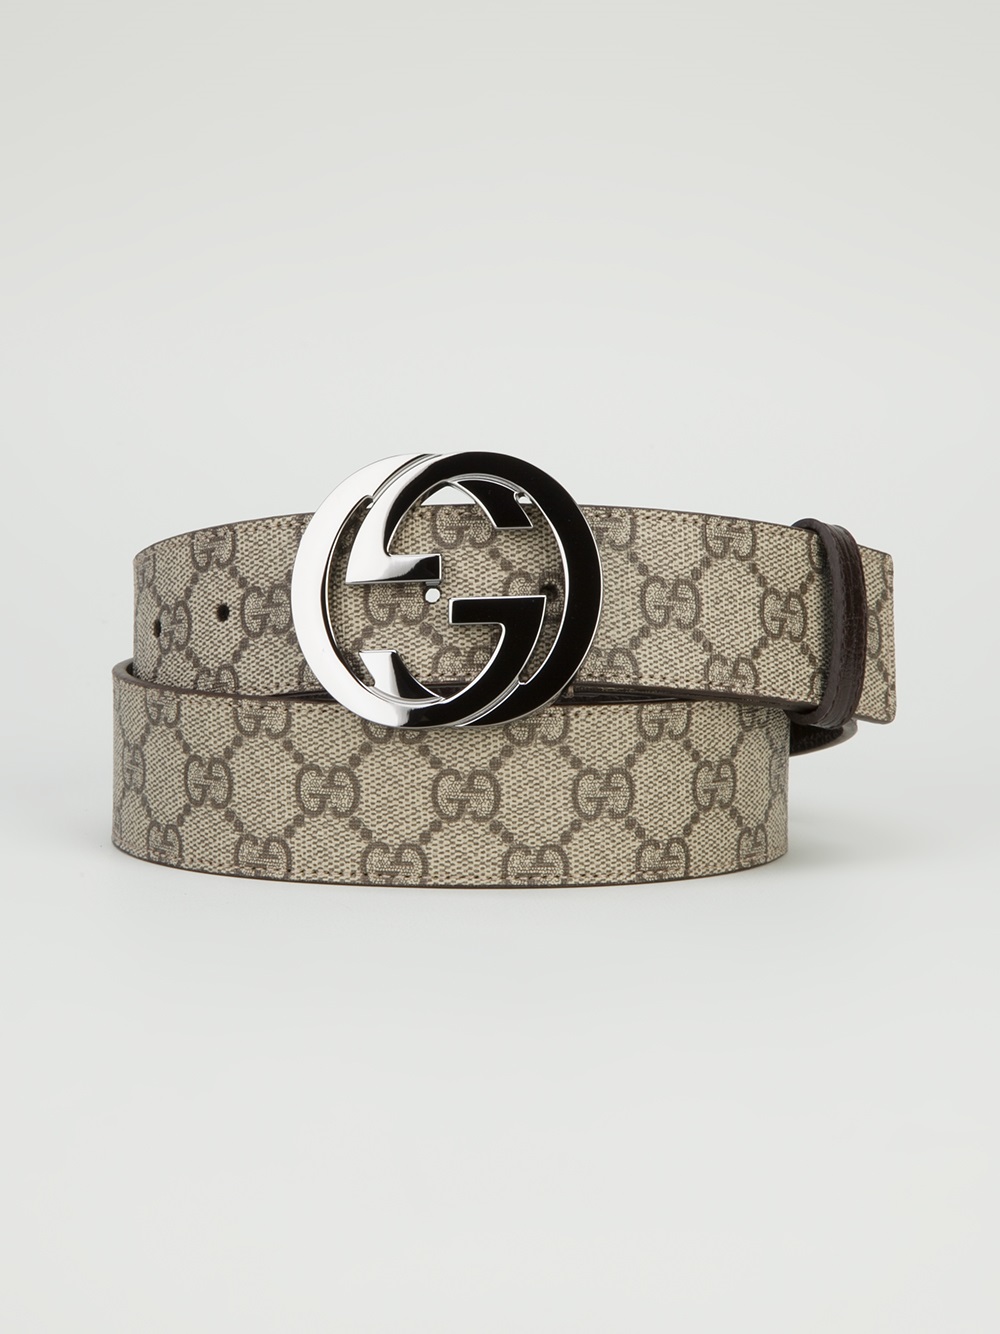 Gucci Monogram Belt in Natural for Men - Lyst